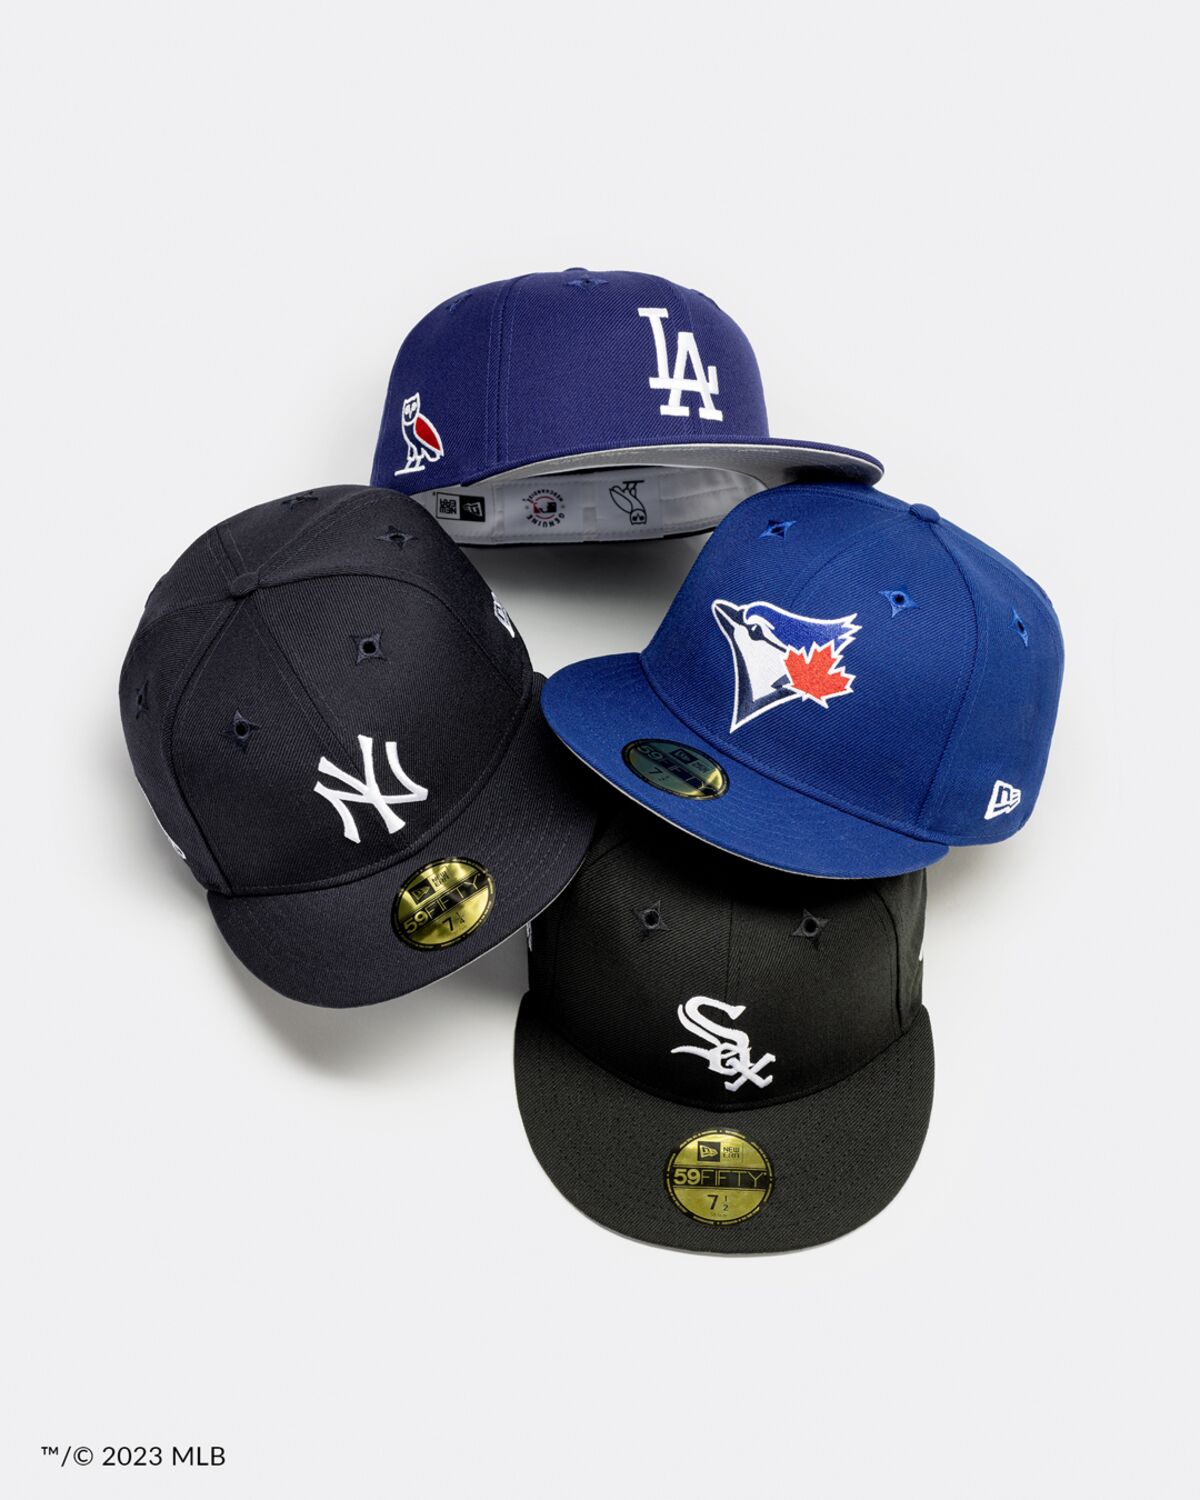 New York Yankees Caps - over 1,000 Yankees caps in stock